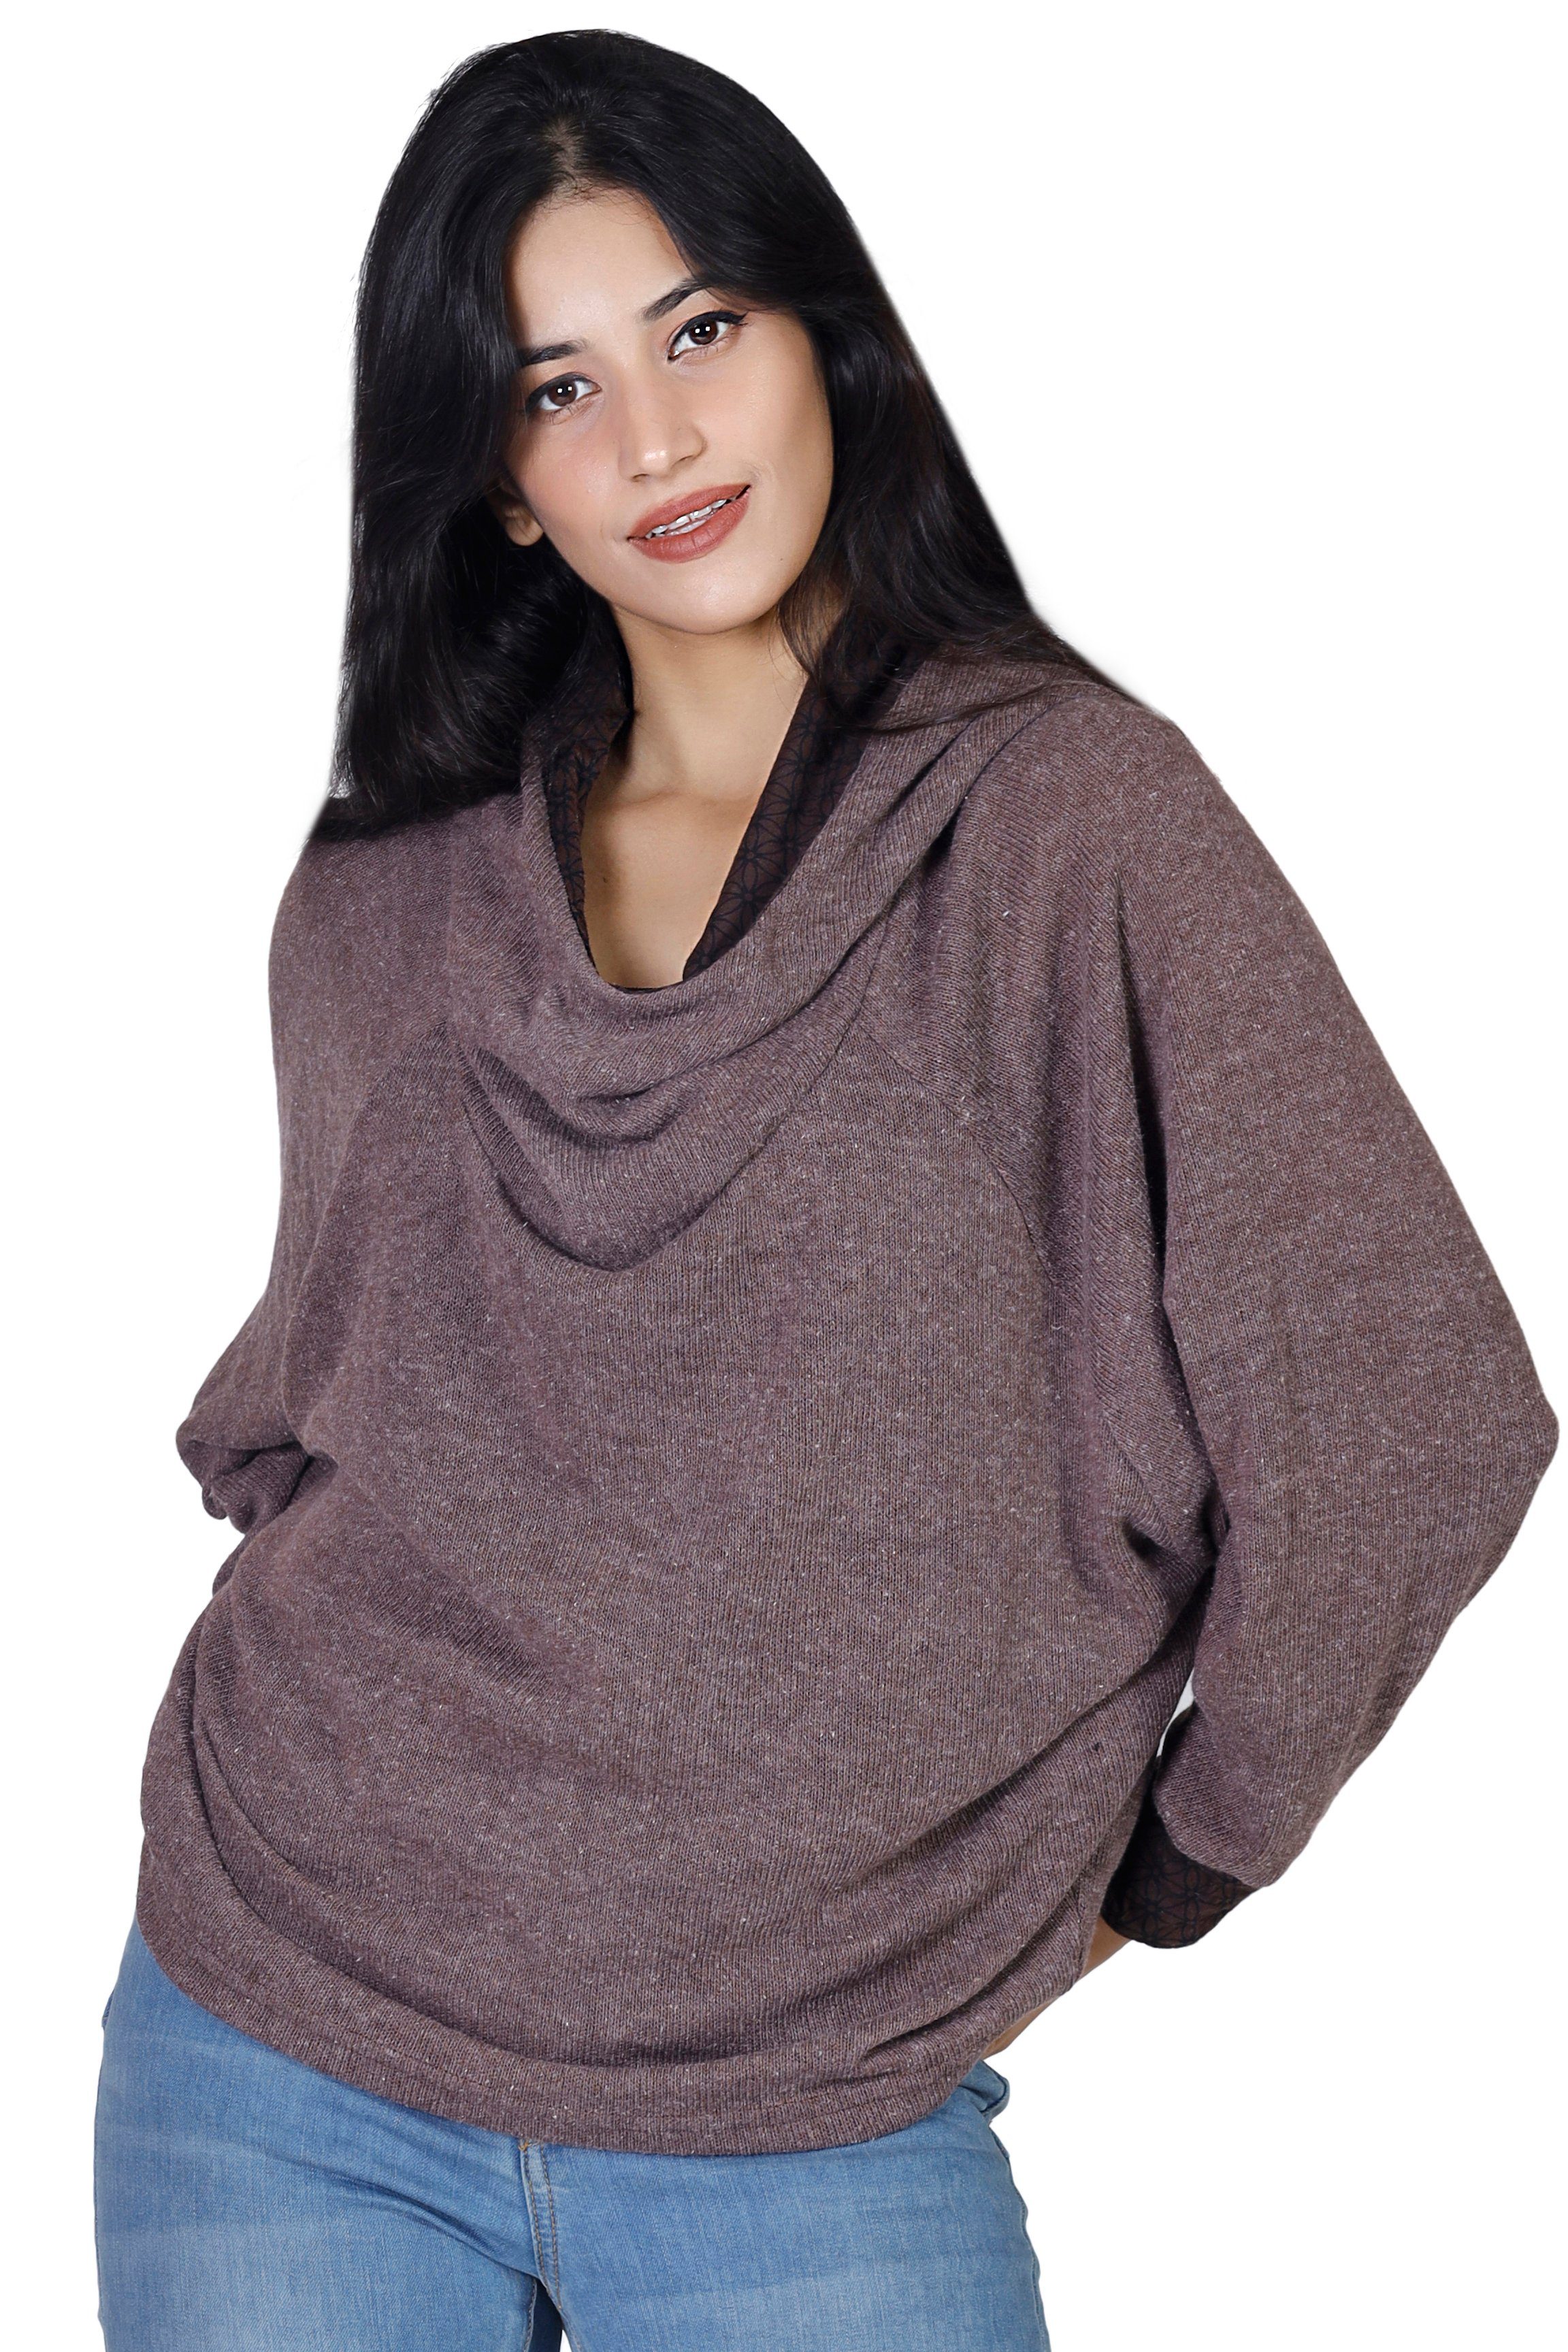 -.. alternative Bekleidung Longsleeve Sweatshirt, Guru-Shop Kapuzenpullover braun Hoody, Pullover,